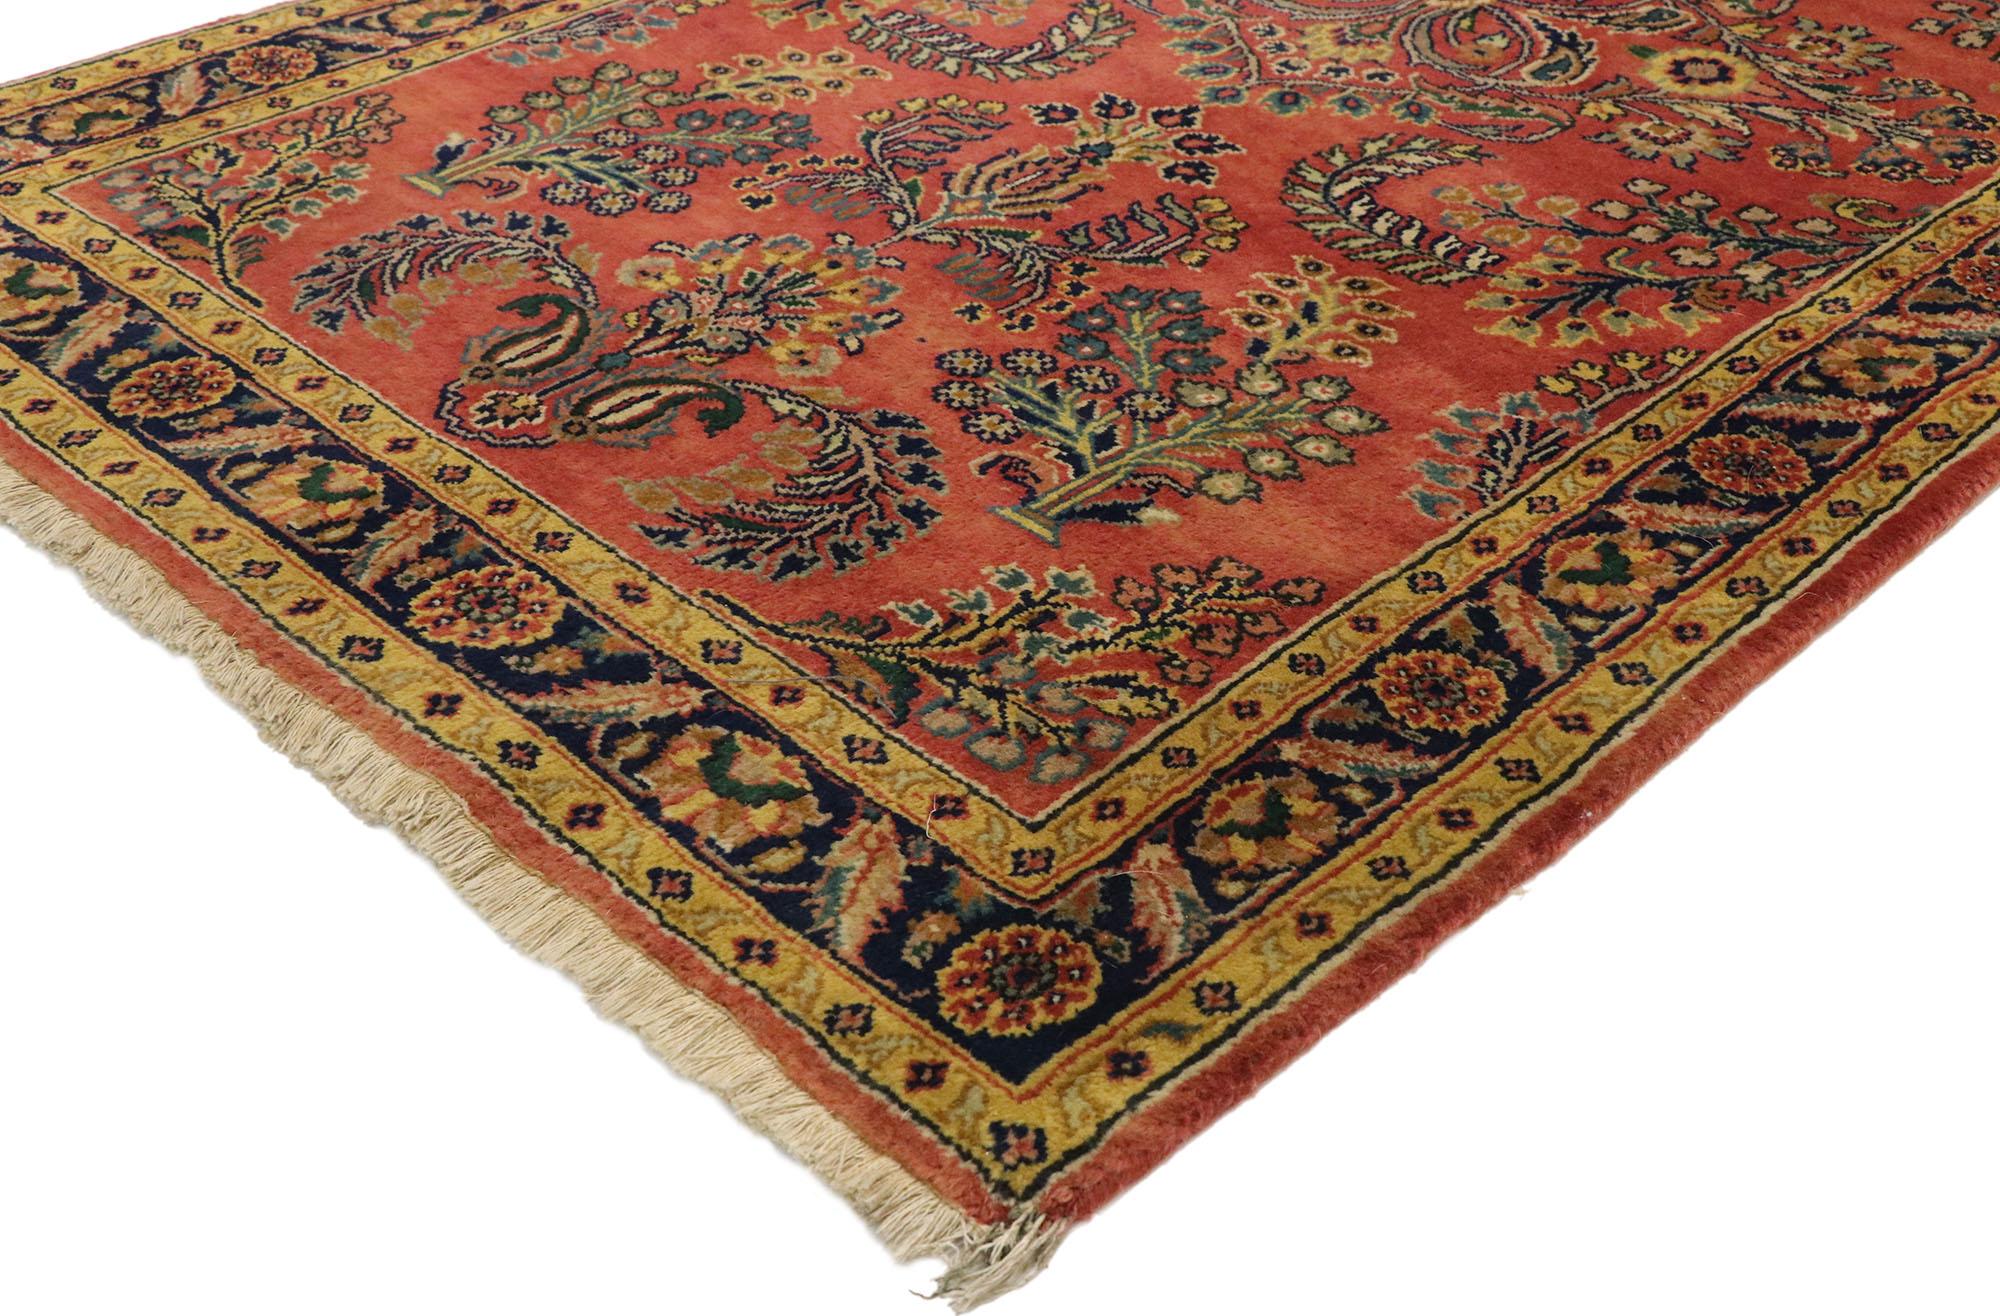 77522, tapis sarouk floral persan vintage avec style Tudor anglais traditionnel. Avec son attrait intemporel, ses couleurs raffinées et ses éléments architecturaux, ce tapis sarouk persan vintage en laine nouée à la main s'intègre parfaitement aux